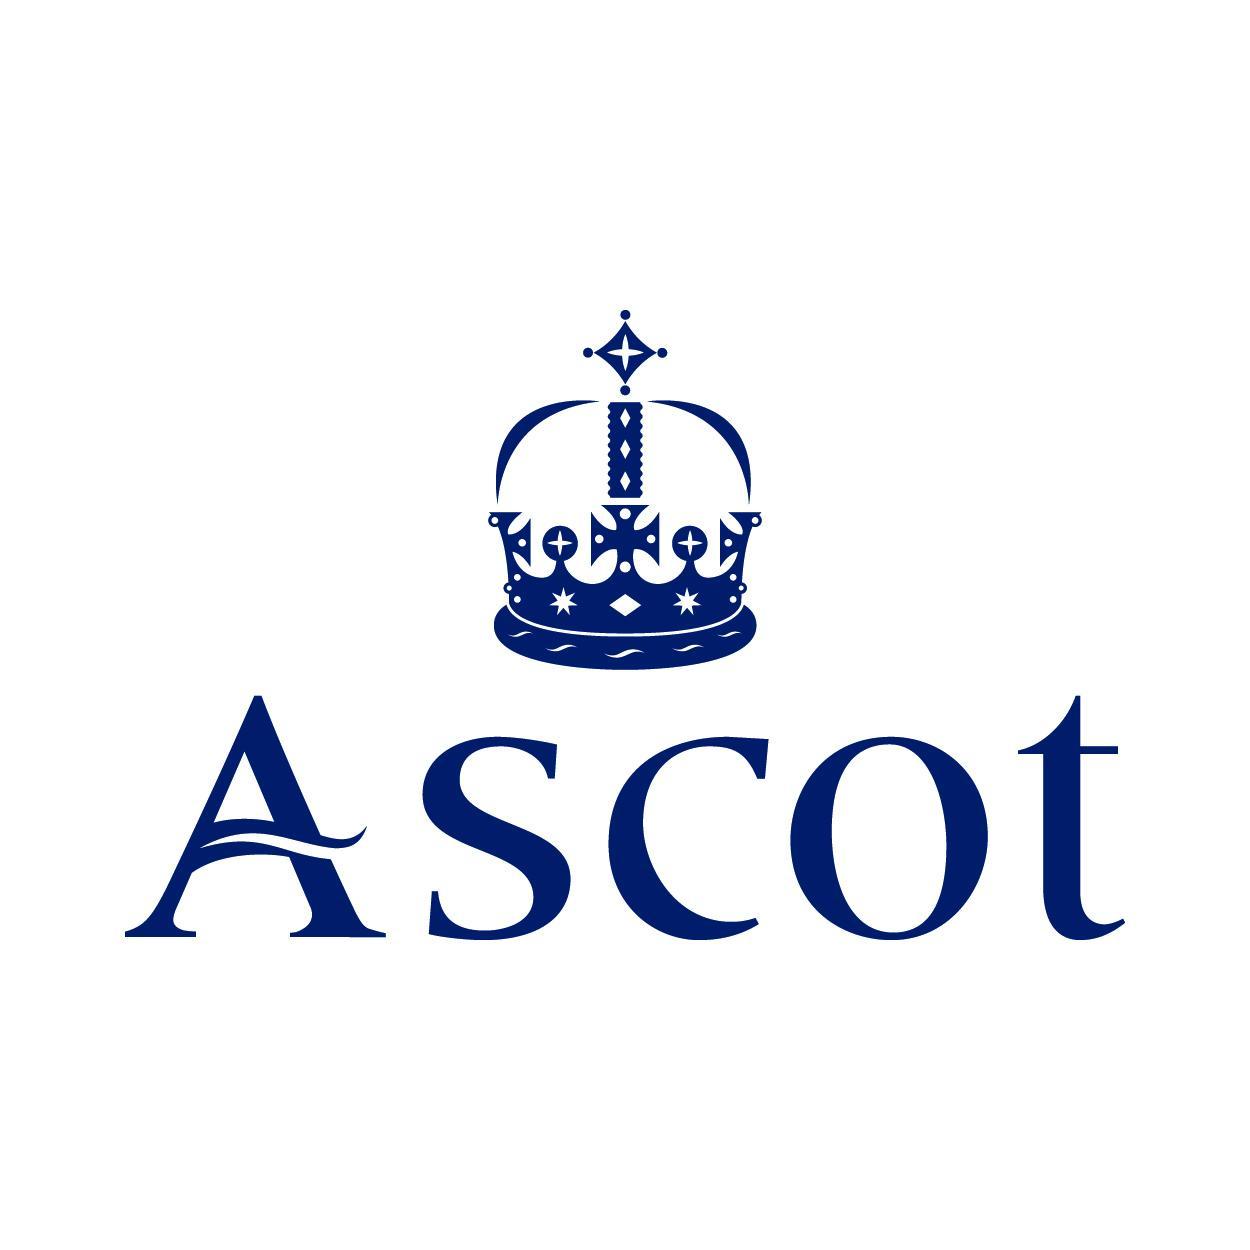 Ascot Racecourse | Home